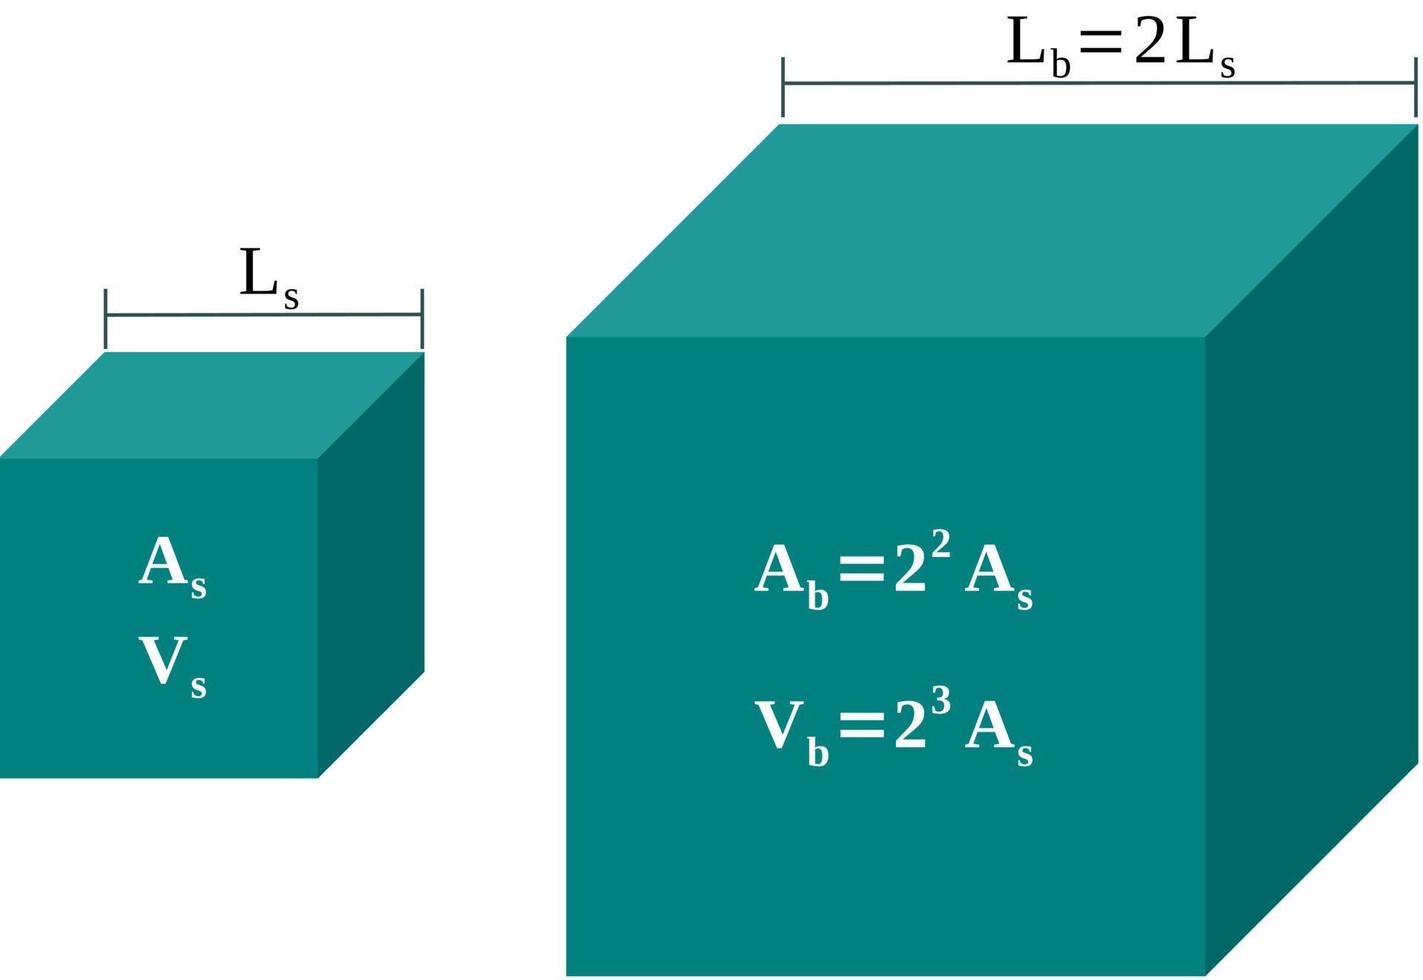 kvadrat-kub lag. relation mellan längder, områden och volymer vektor